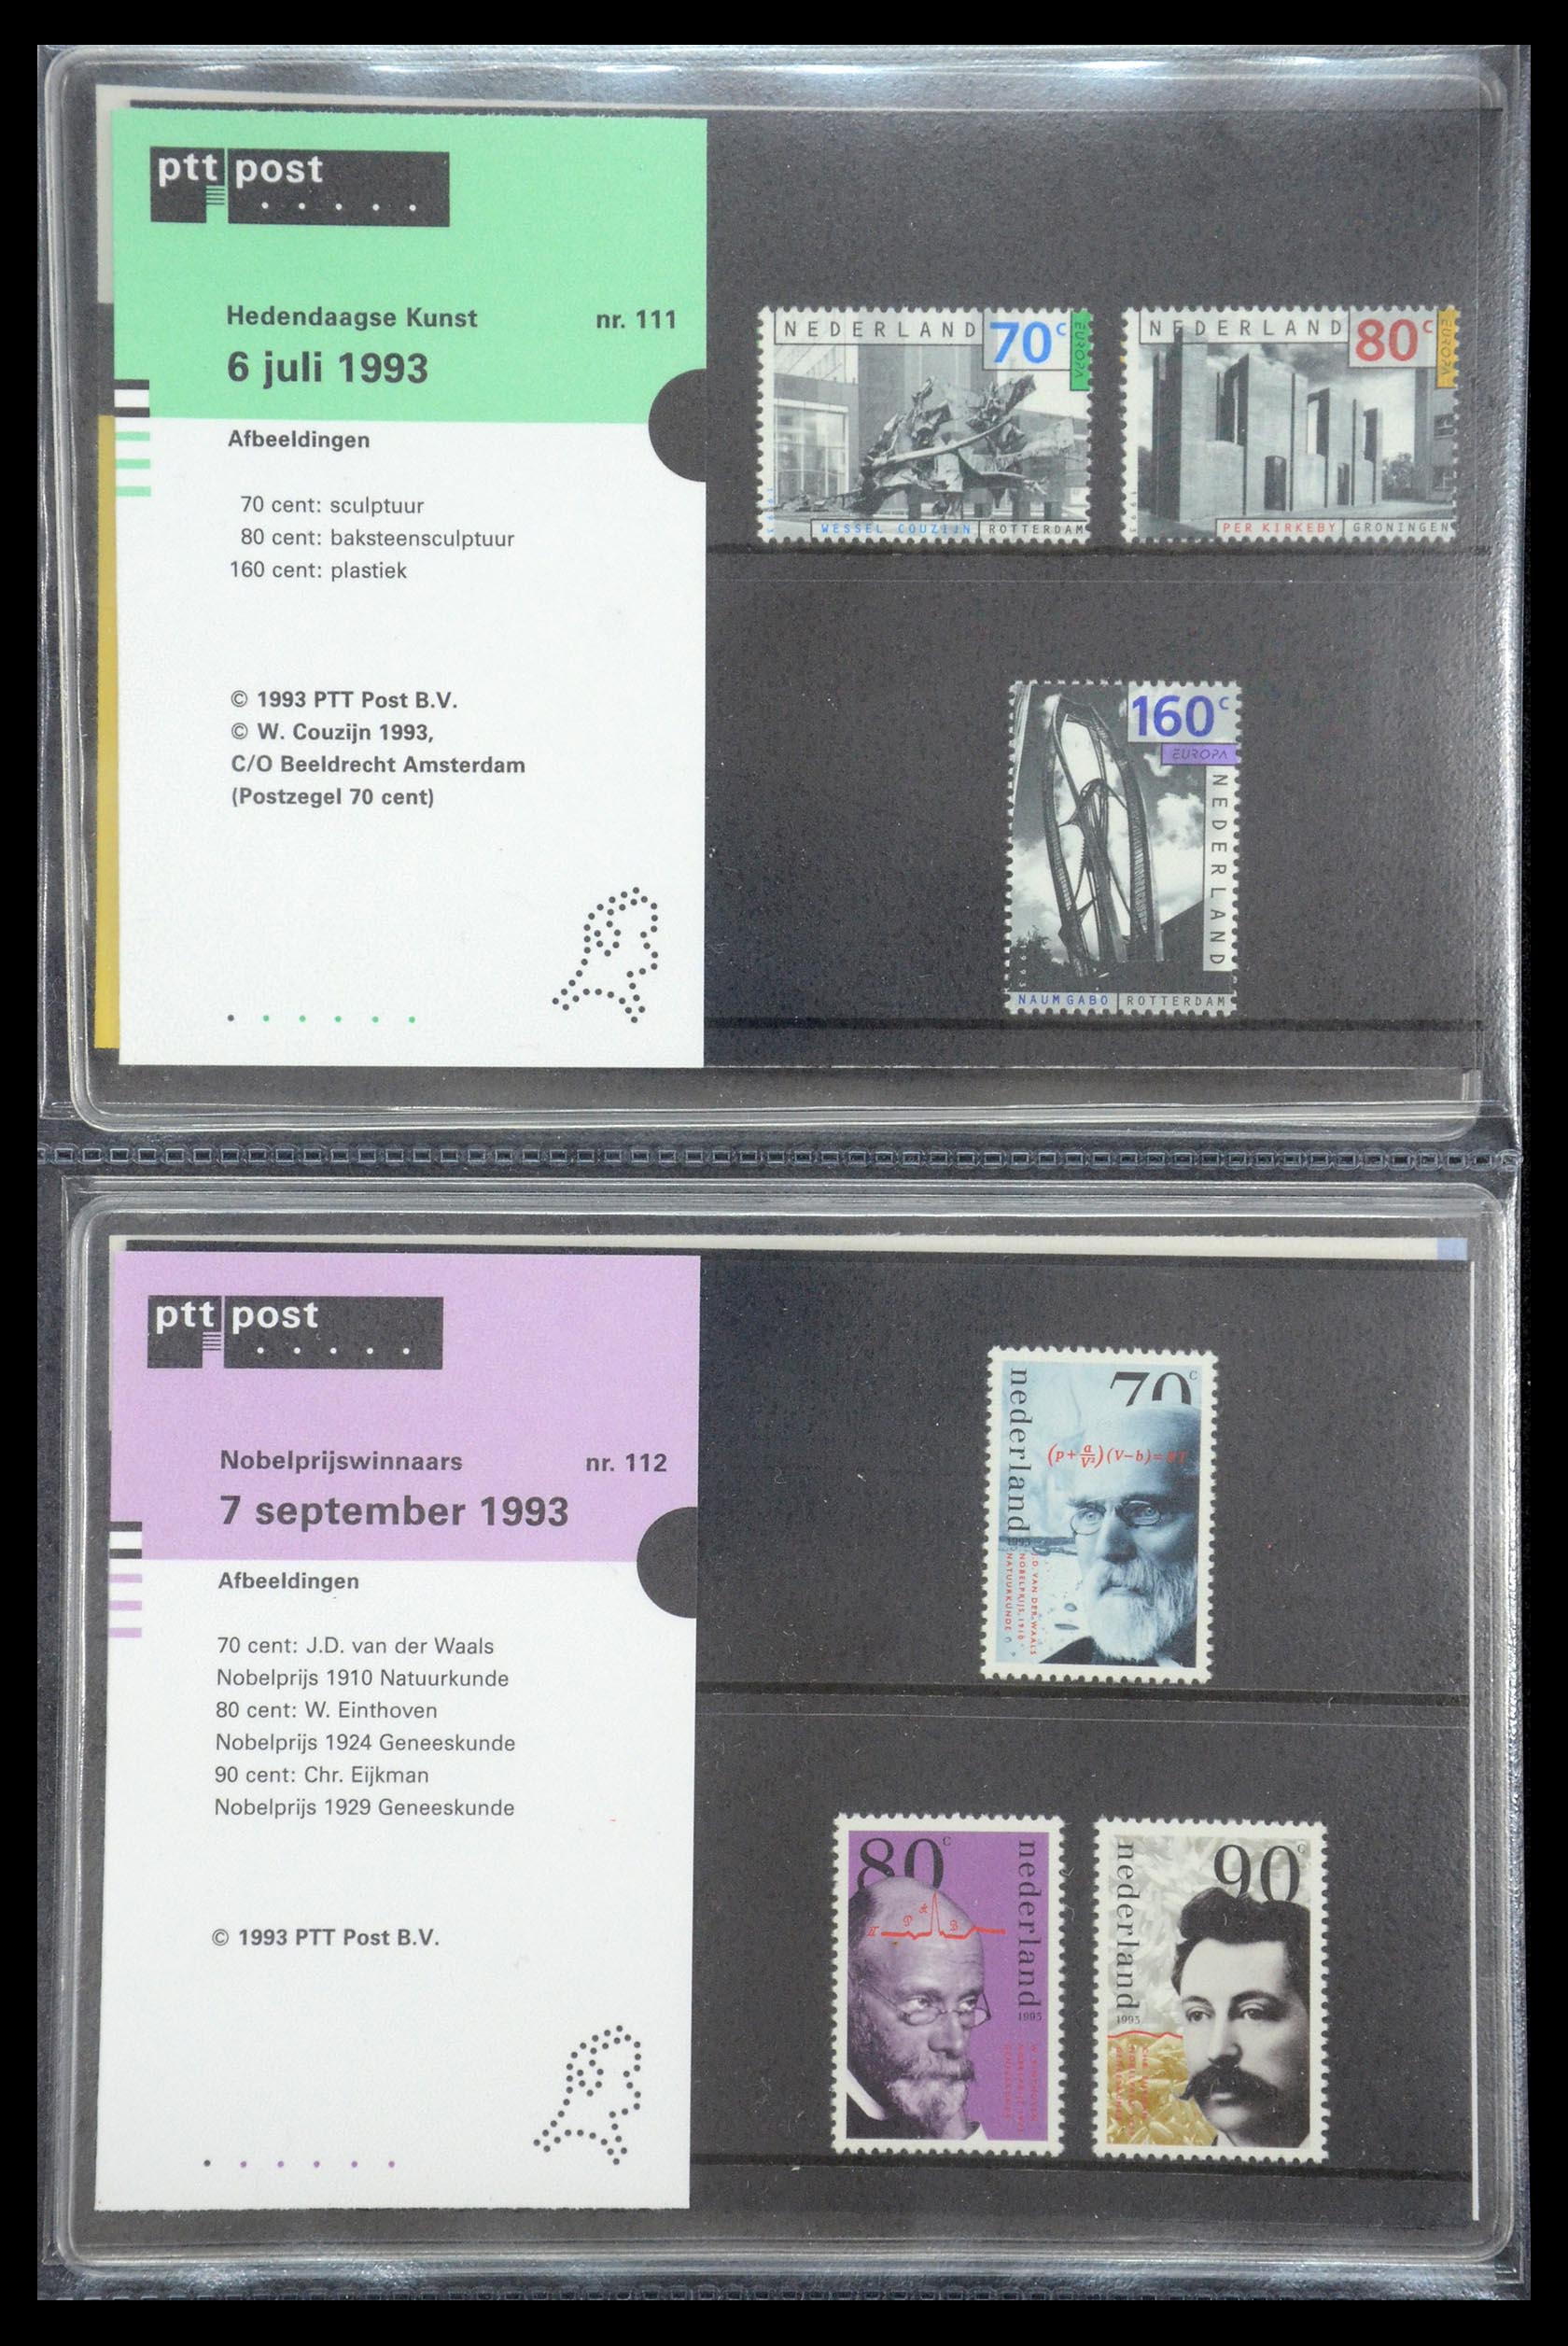 35187 057 - Stamp Collection 35187 Netherlands PTT presentation packs 1982-2019!